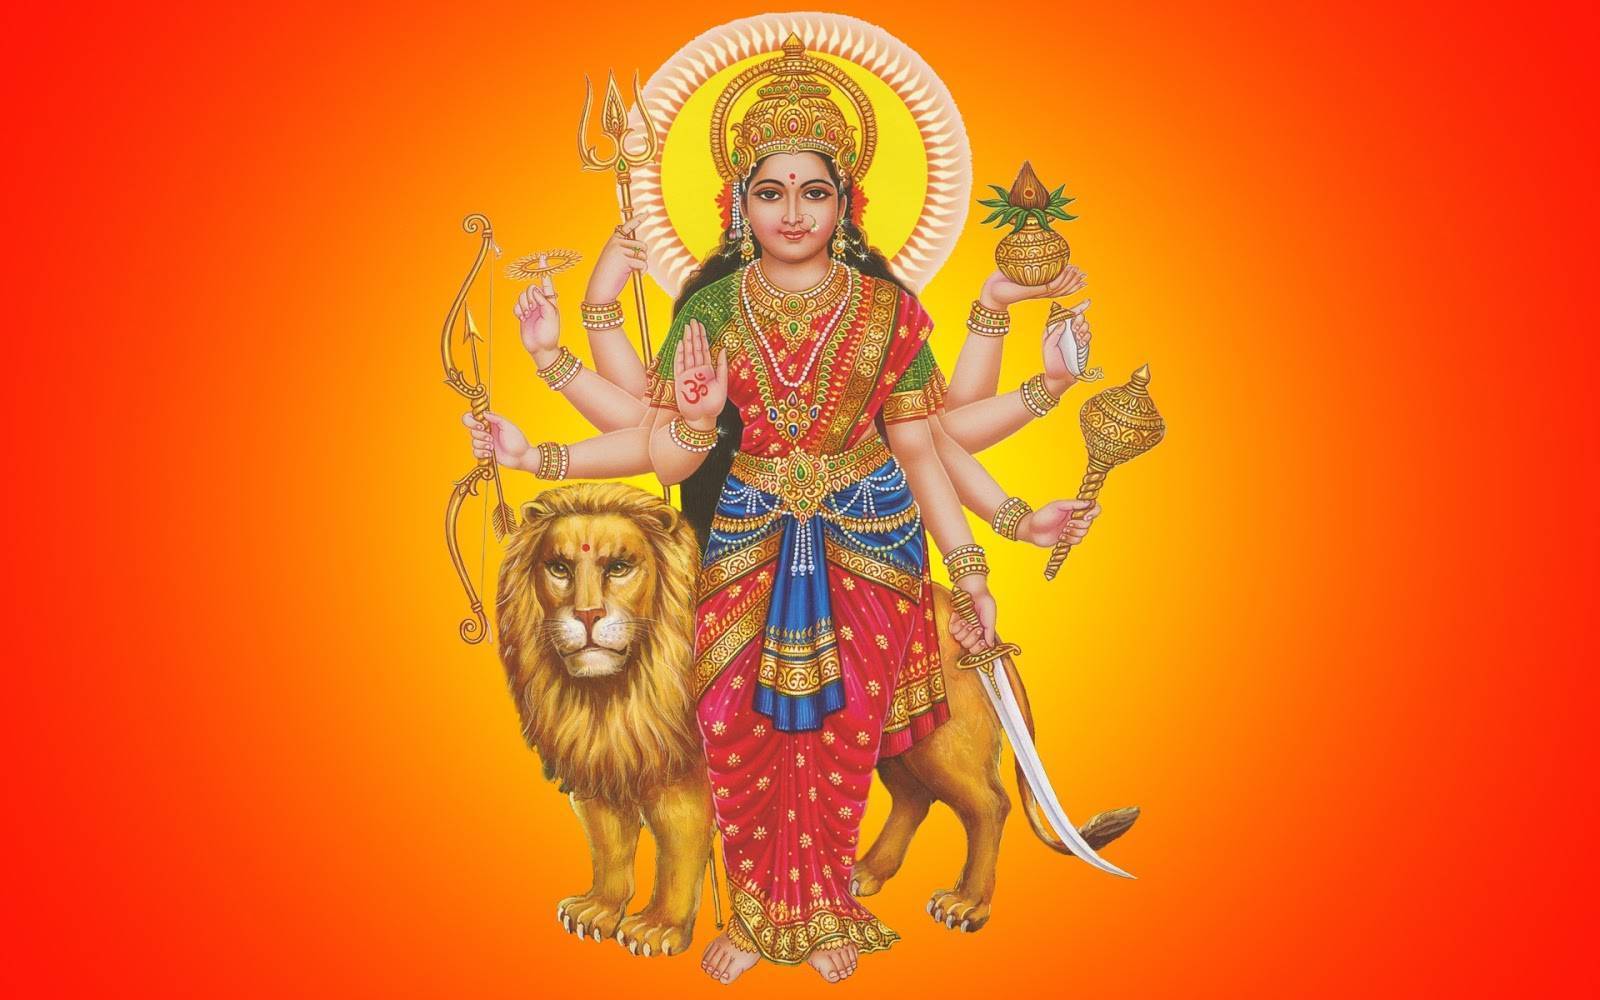 Дурга (богиня) - фото, древнеиндийская мифология, мантры, жертвы, кали, жена шивы - 24сми